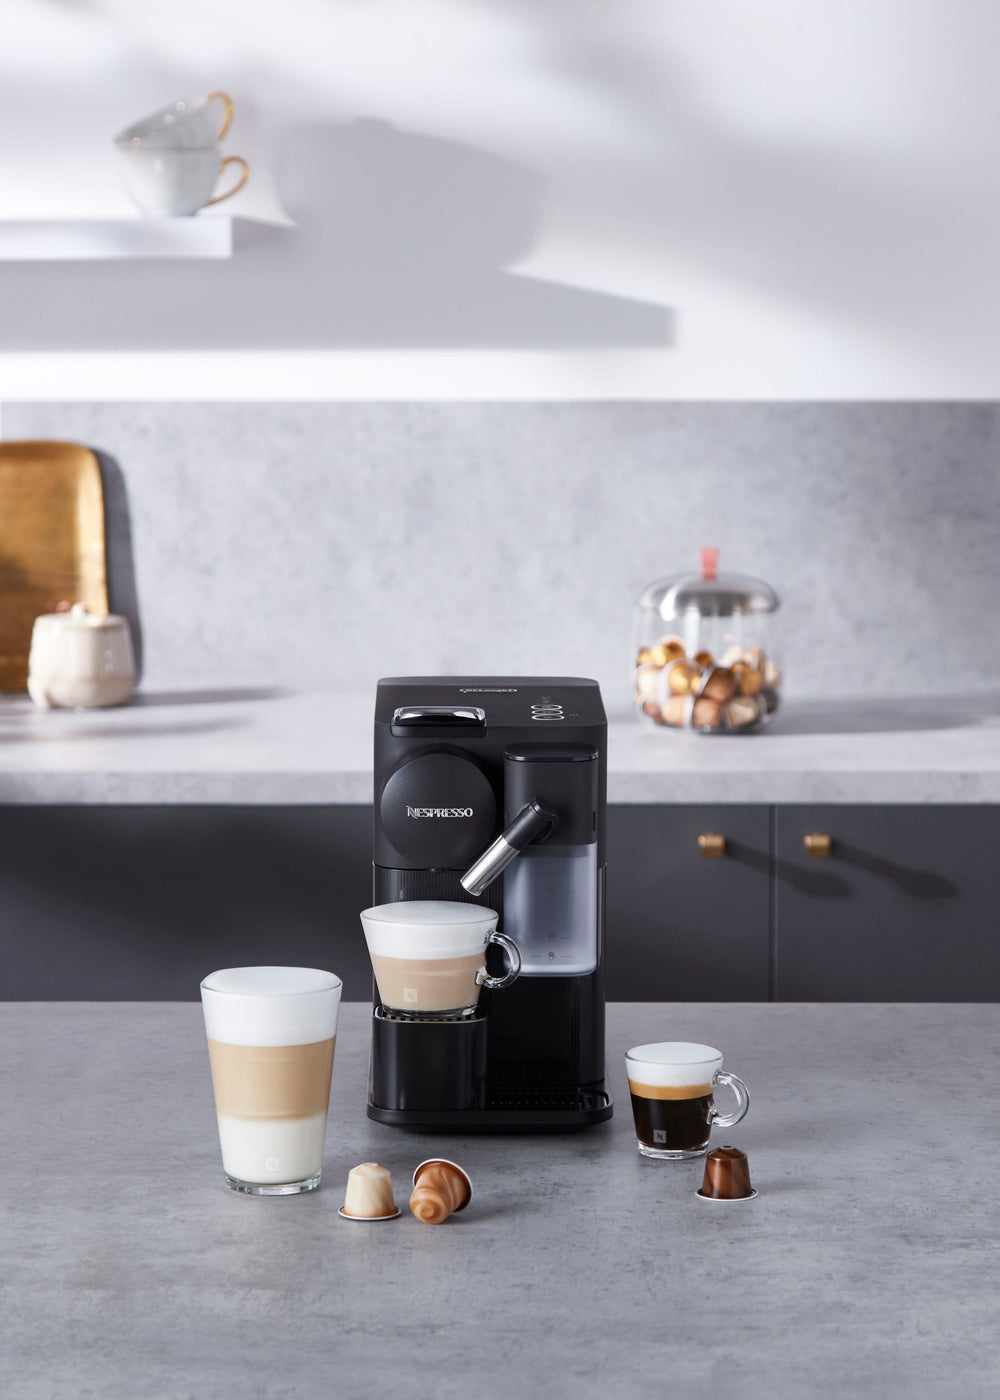 Nespresso Lattissima One Original Espresso Machine with Milk Frother by DeLonghi - Black_1